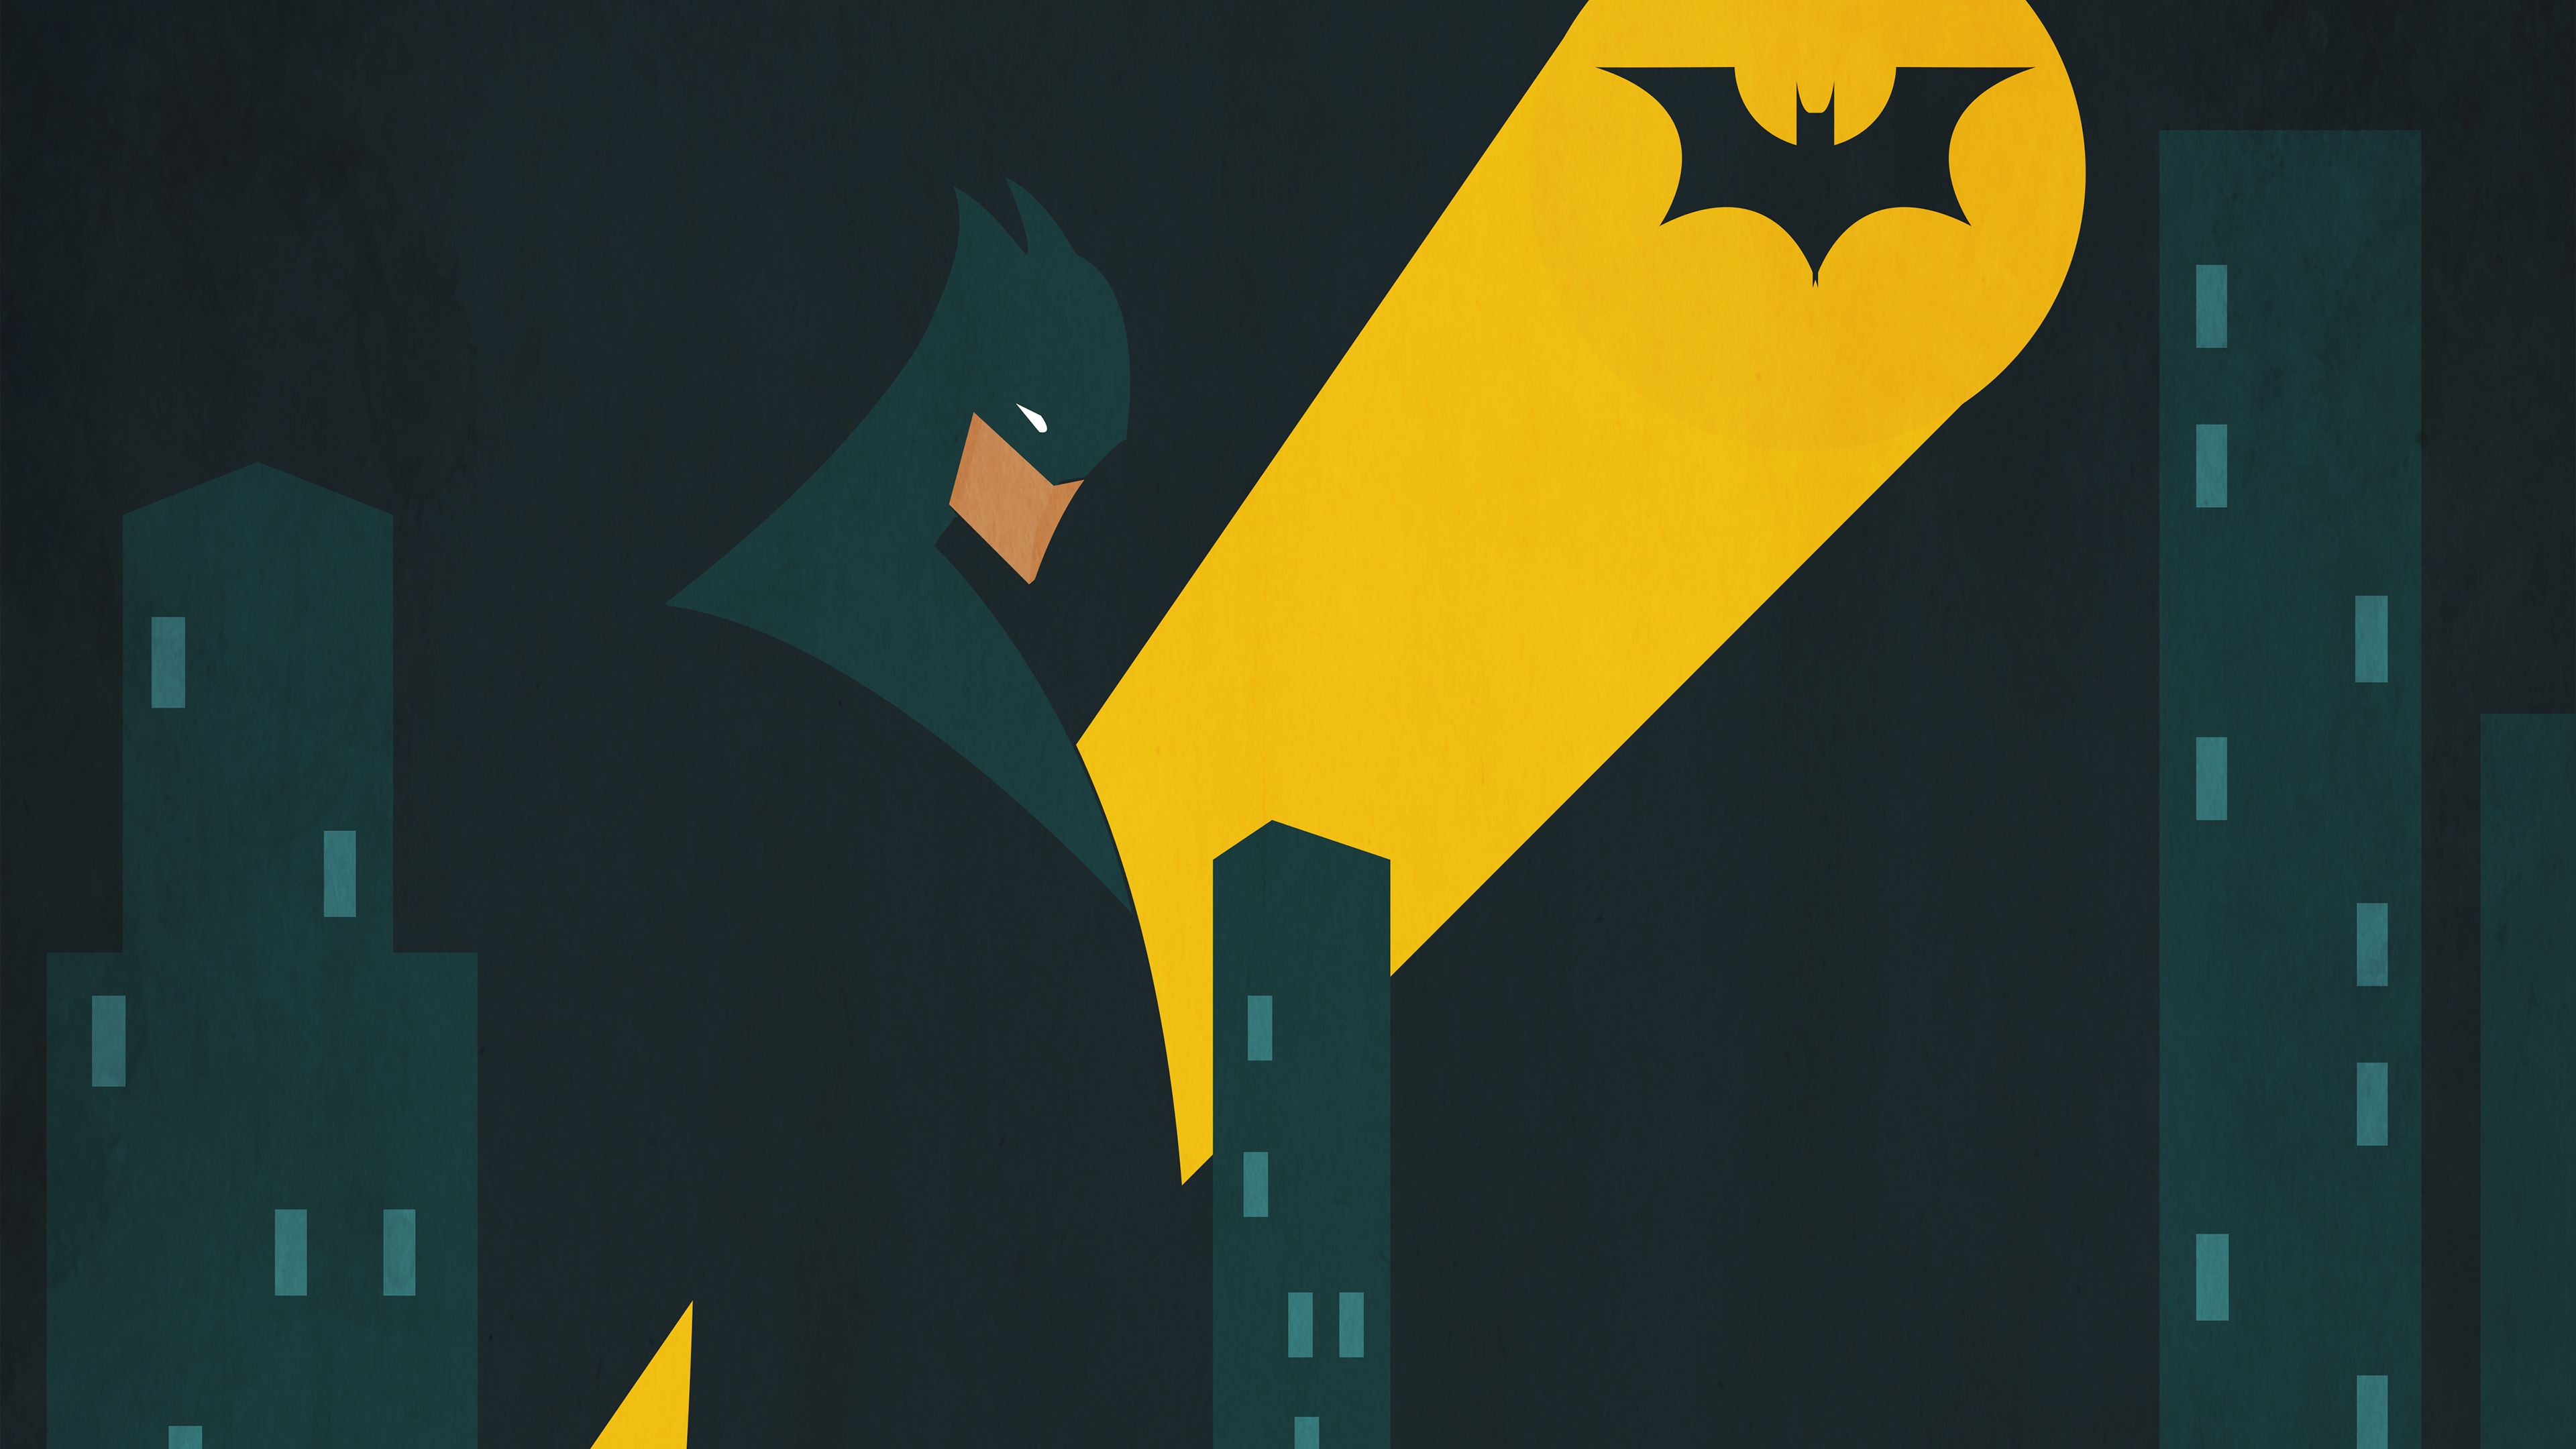 Batman Gotham Bat Signal superheroes wallpaper, iron man wallpaper, hd- wallpaper, behance wallpaper, batm. Batman wallpaper, Iron man wallpaper, Man wallpaper